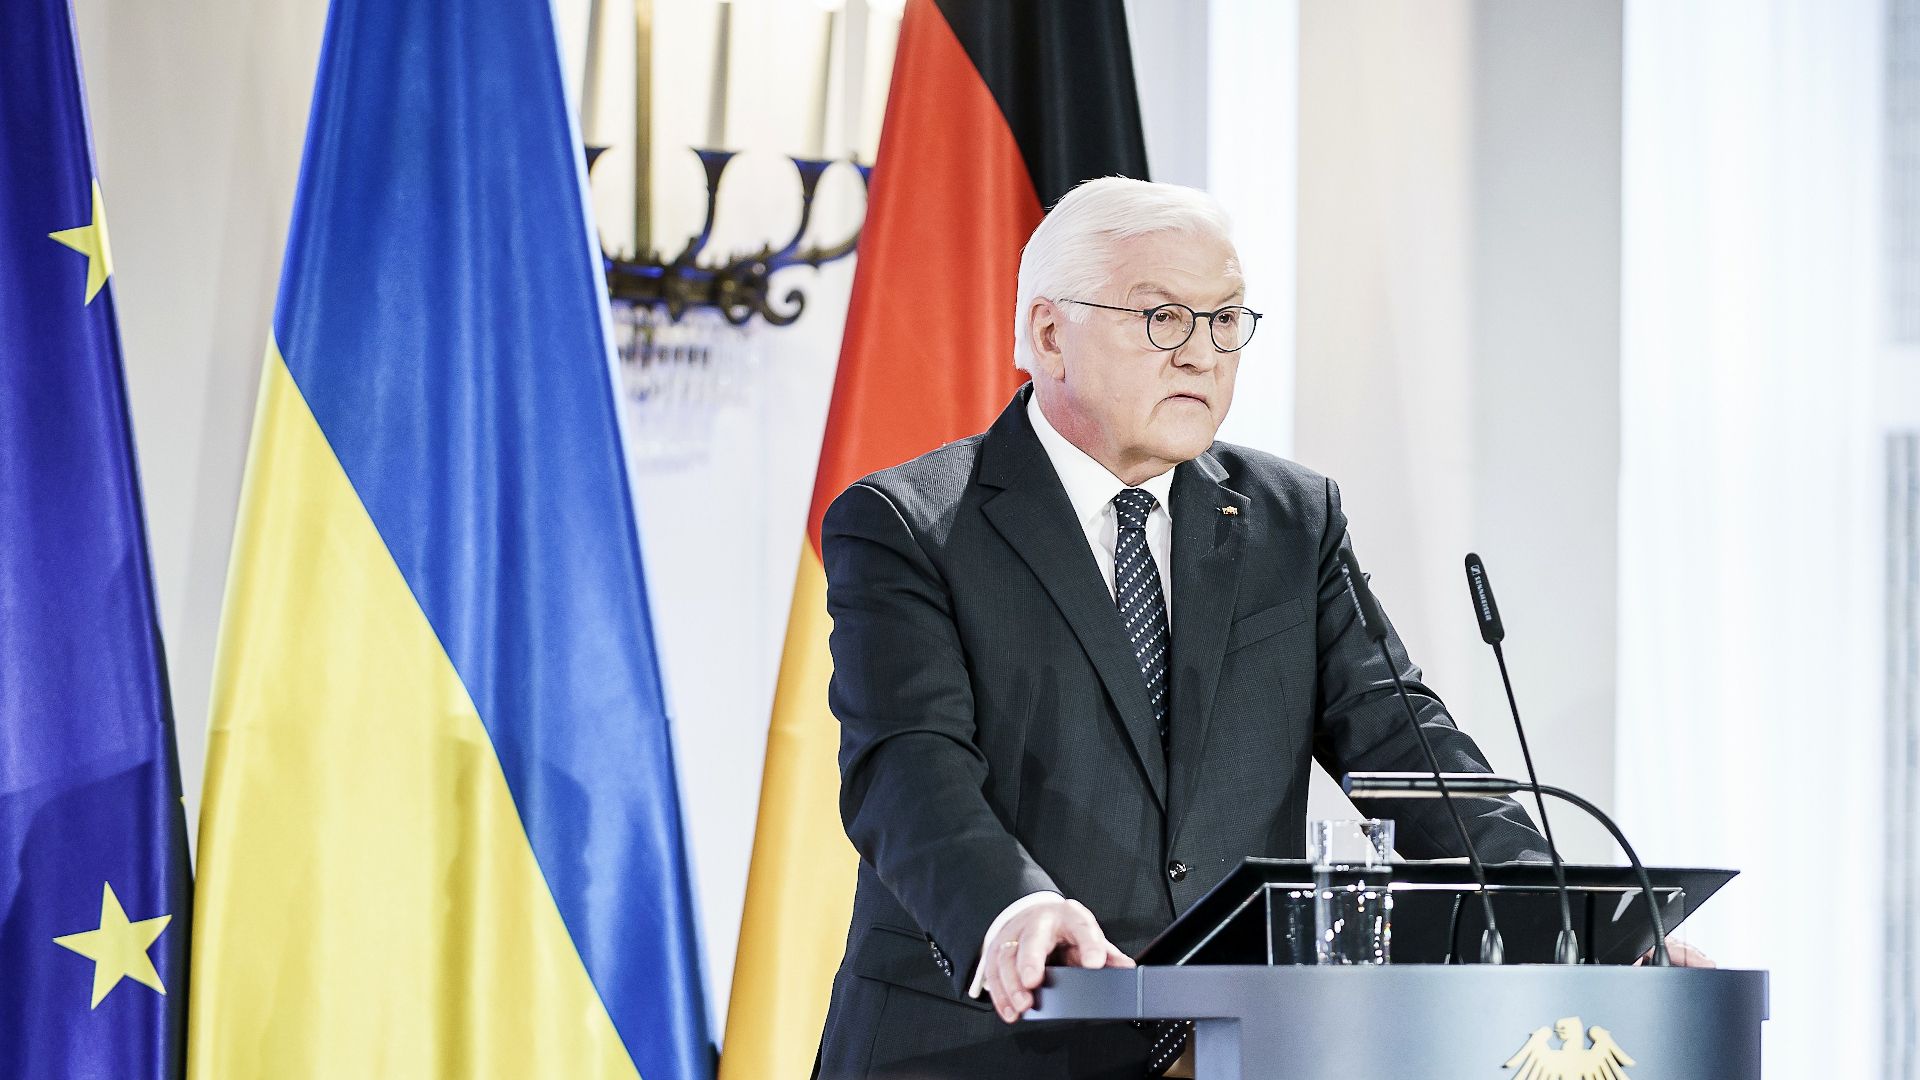 Bundespräsident Frank-Walter Steinmeier bei seiner Rede anlässlich des Jahrestages des russischen Überfalls auf die Ukraine im Schloss Bellevue (Foto: Bundesregierung / Jesco Denzel)